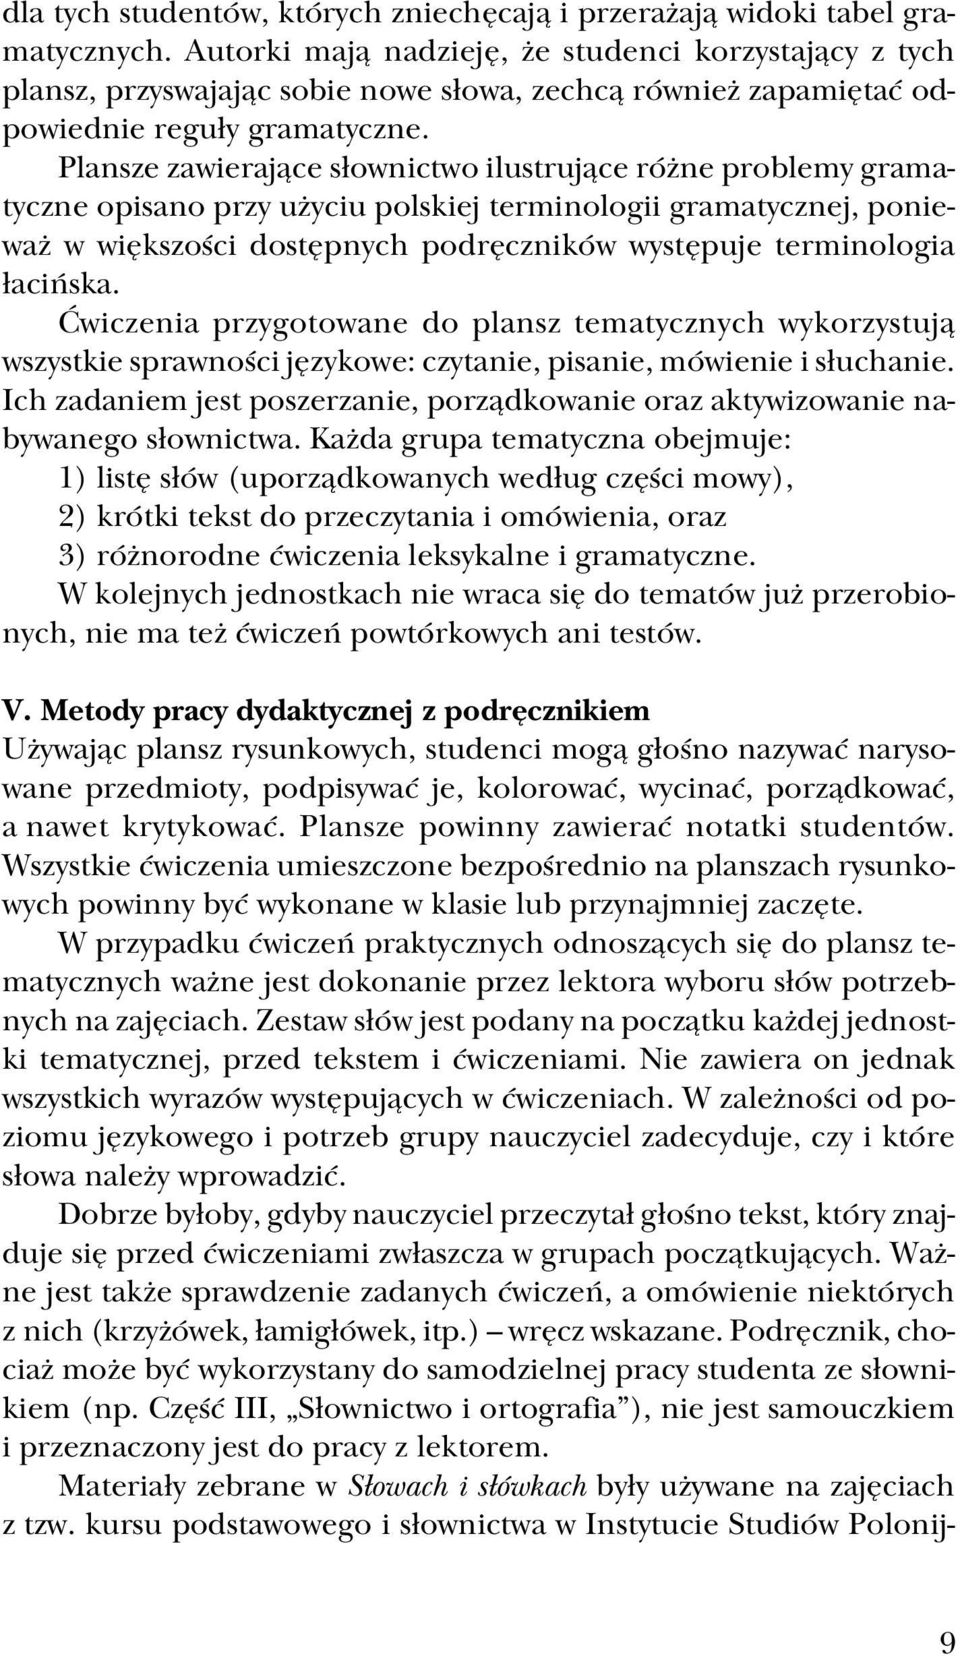 Plansze zawierające słownictwo ilustrujące różne problemy grama tyczne opisano przy użyciu polskiej terminologii gramatycznej, ponie waż w większości dostępnych podręczników występuje terminologia